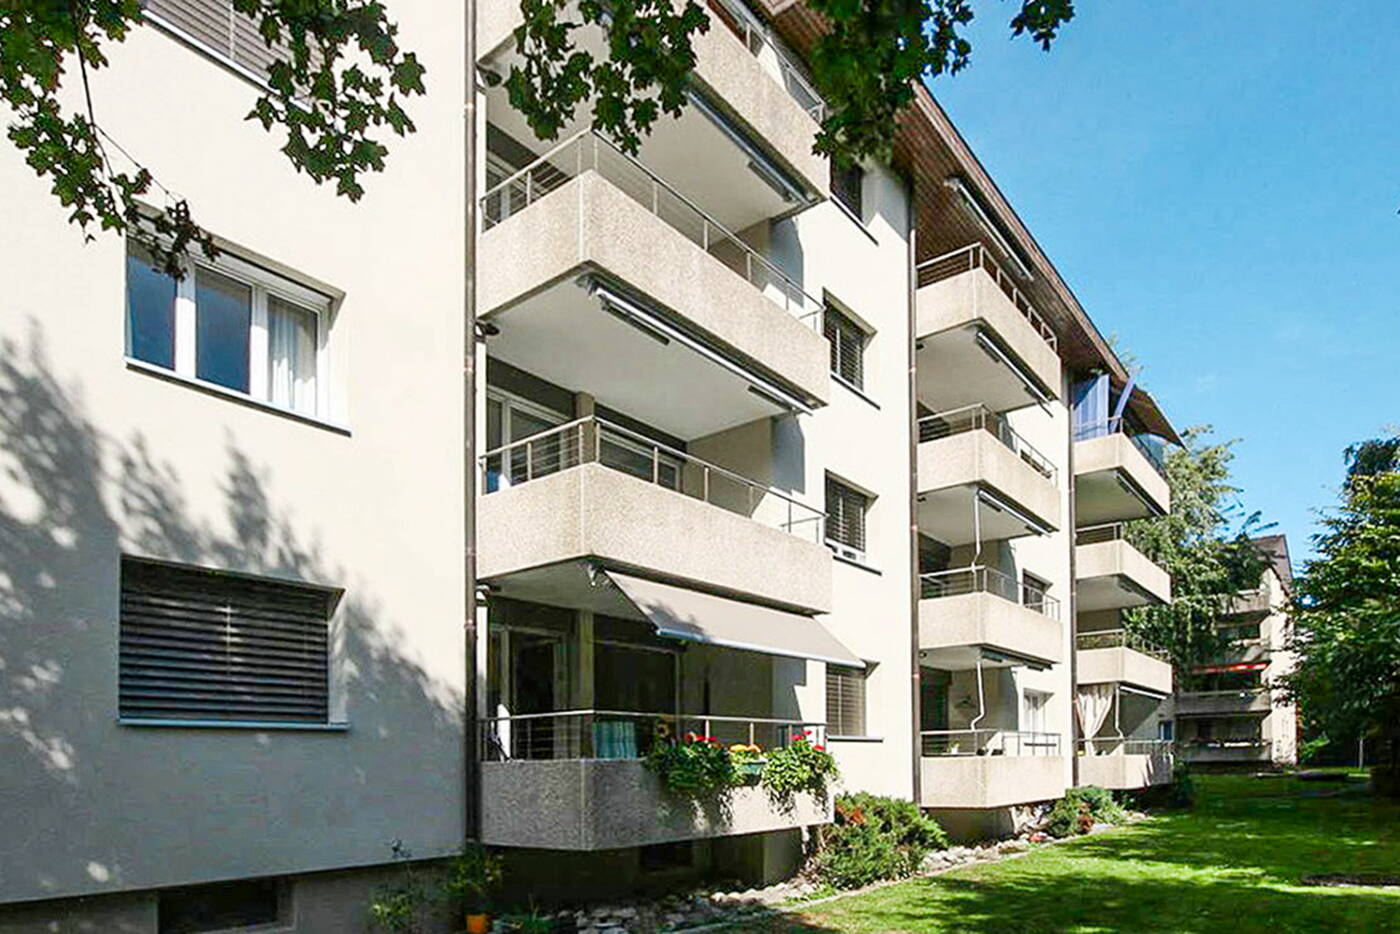 herzogenbuchsee_sanierung_mehrfamilienhaus_balkone.jpg